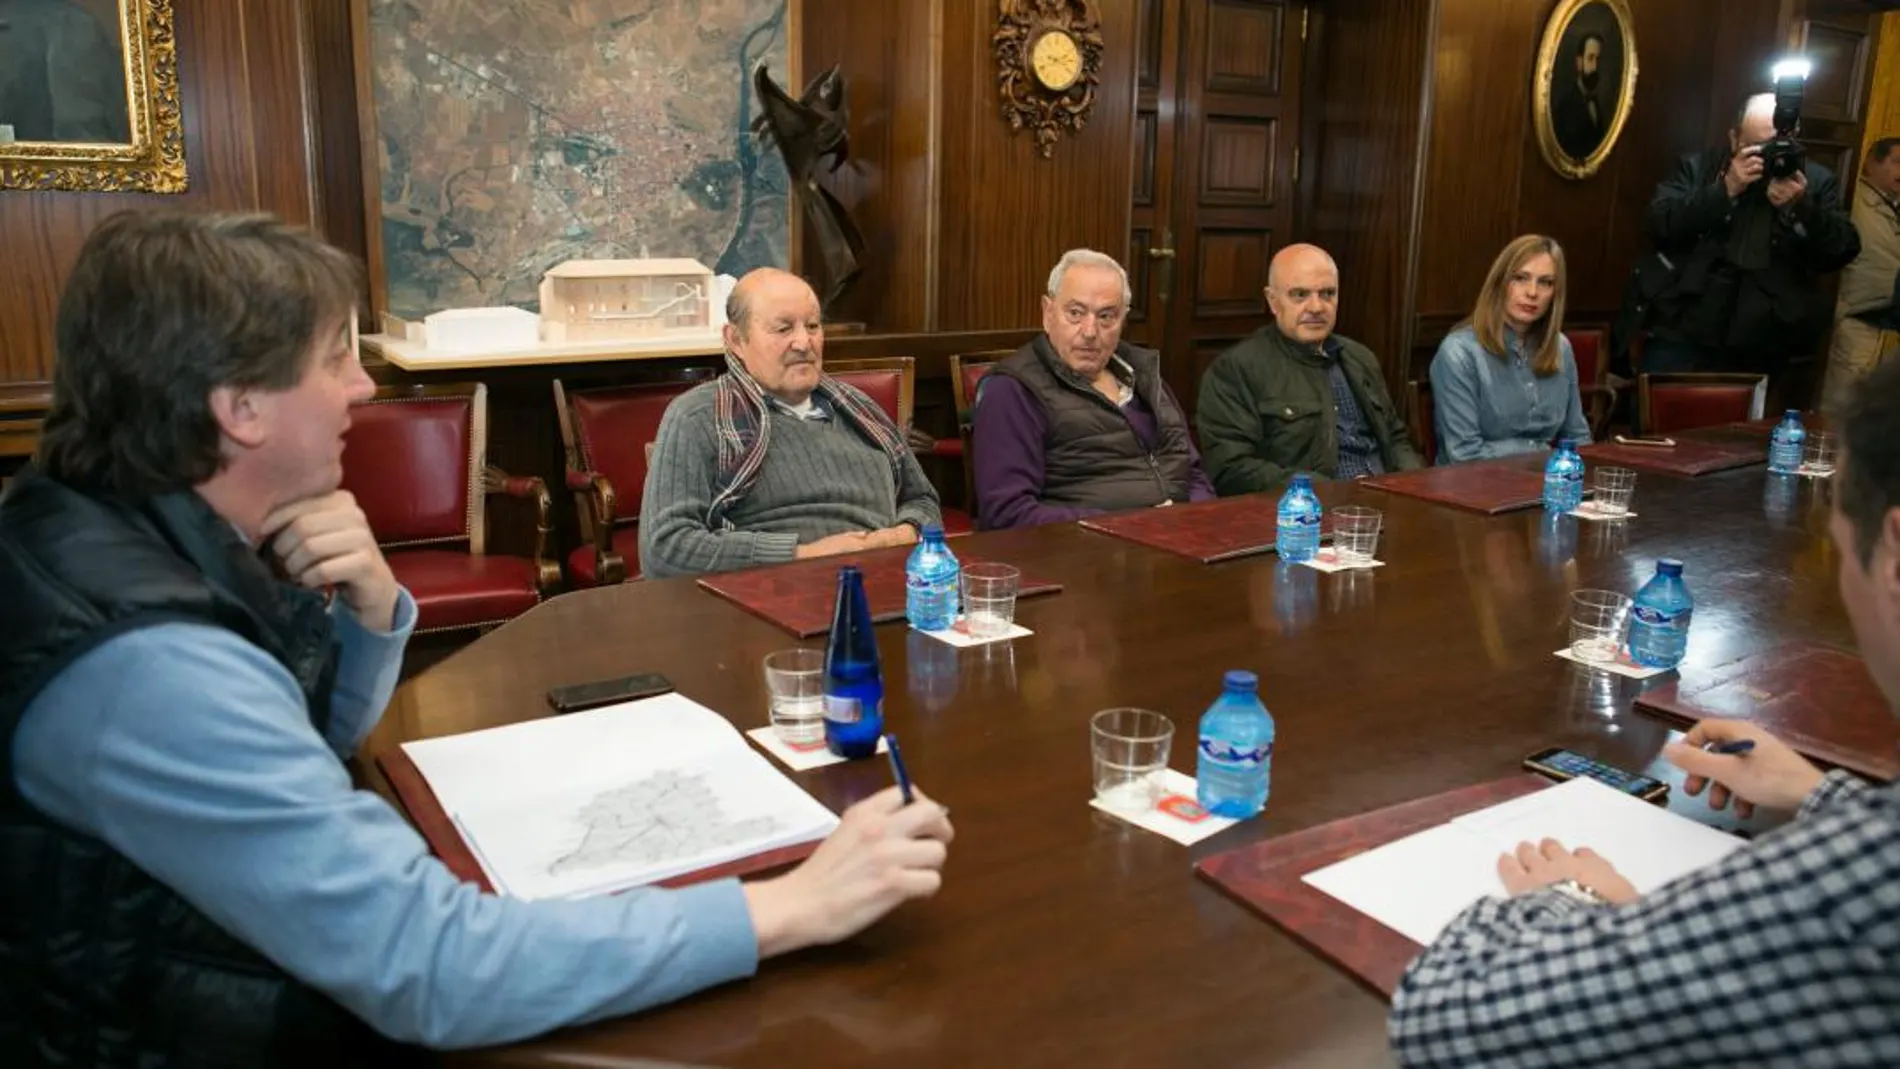 El alcalde de Soria, Carlos Martínez, preside la reunión en el Ayuntamiento con los representantes de las localidades riojanas, navarras y aragonesas